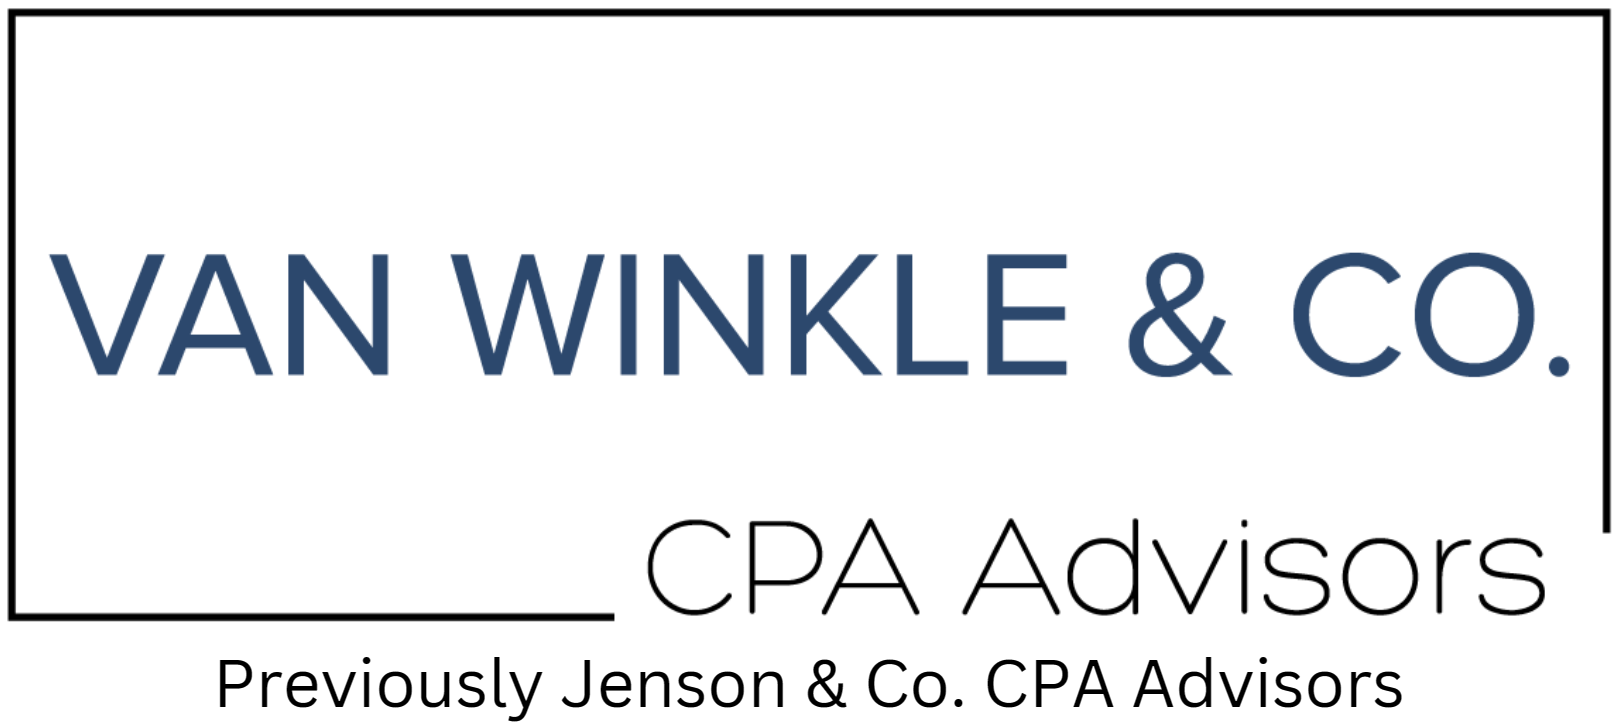 Van Winkle & Co logo